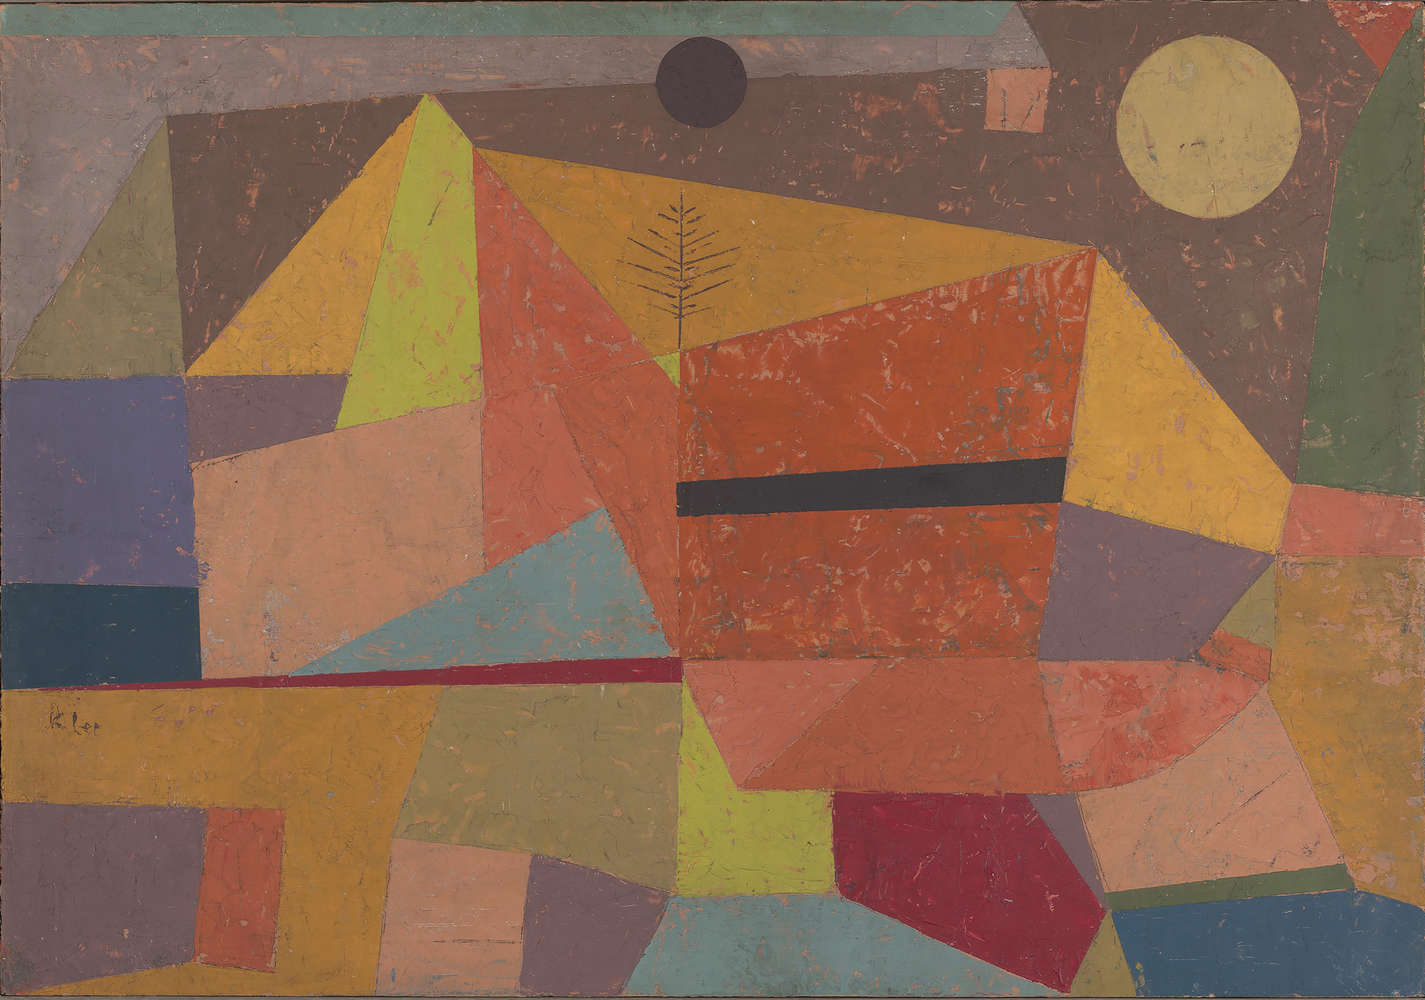             Paesaggio montano allegro", murale di Paul Klee
        